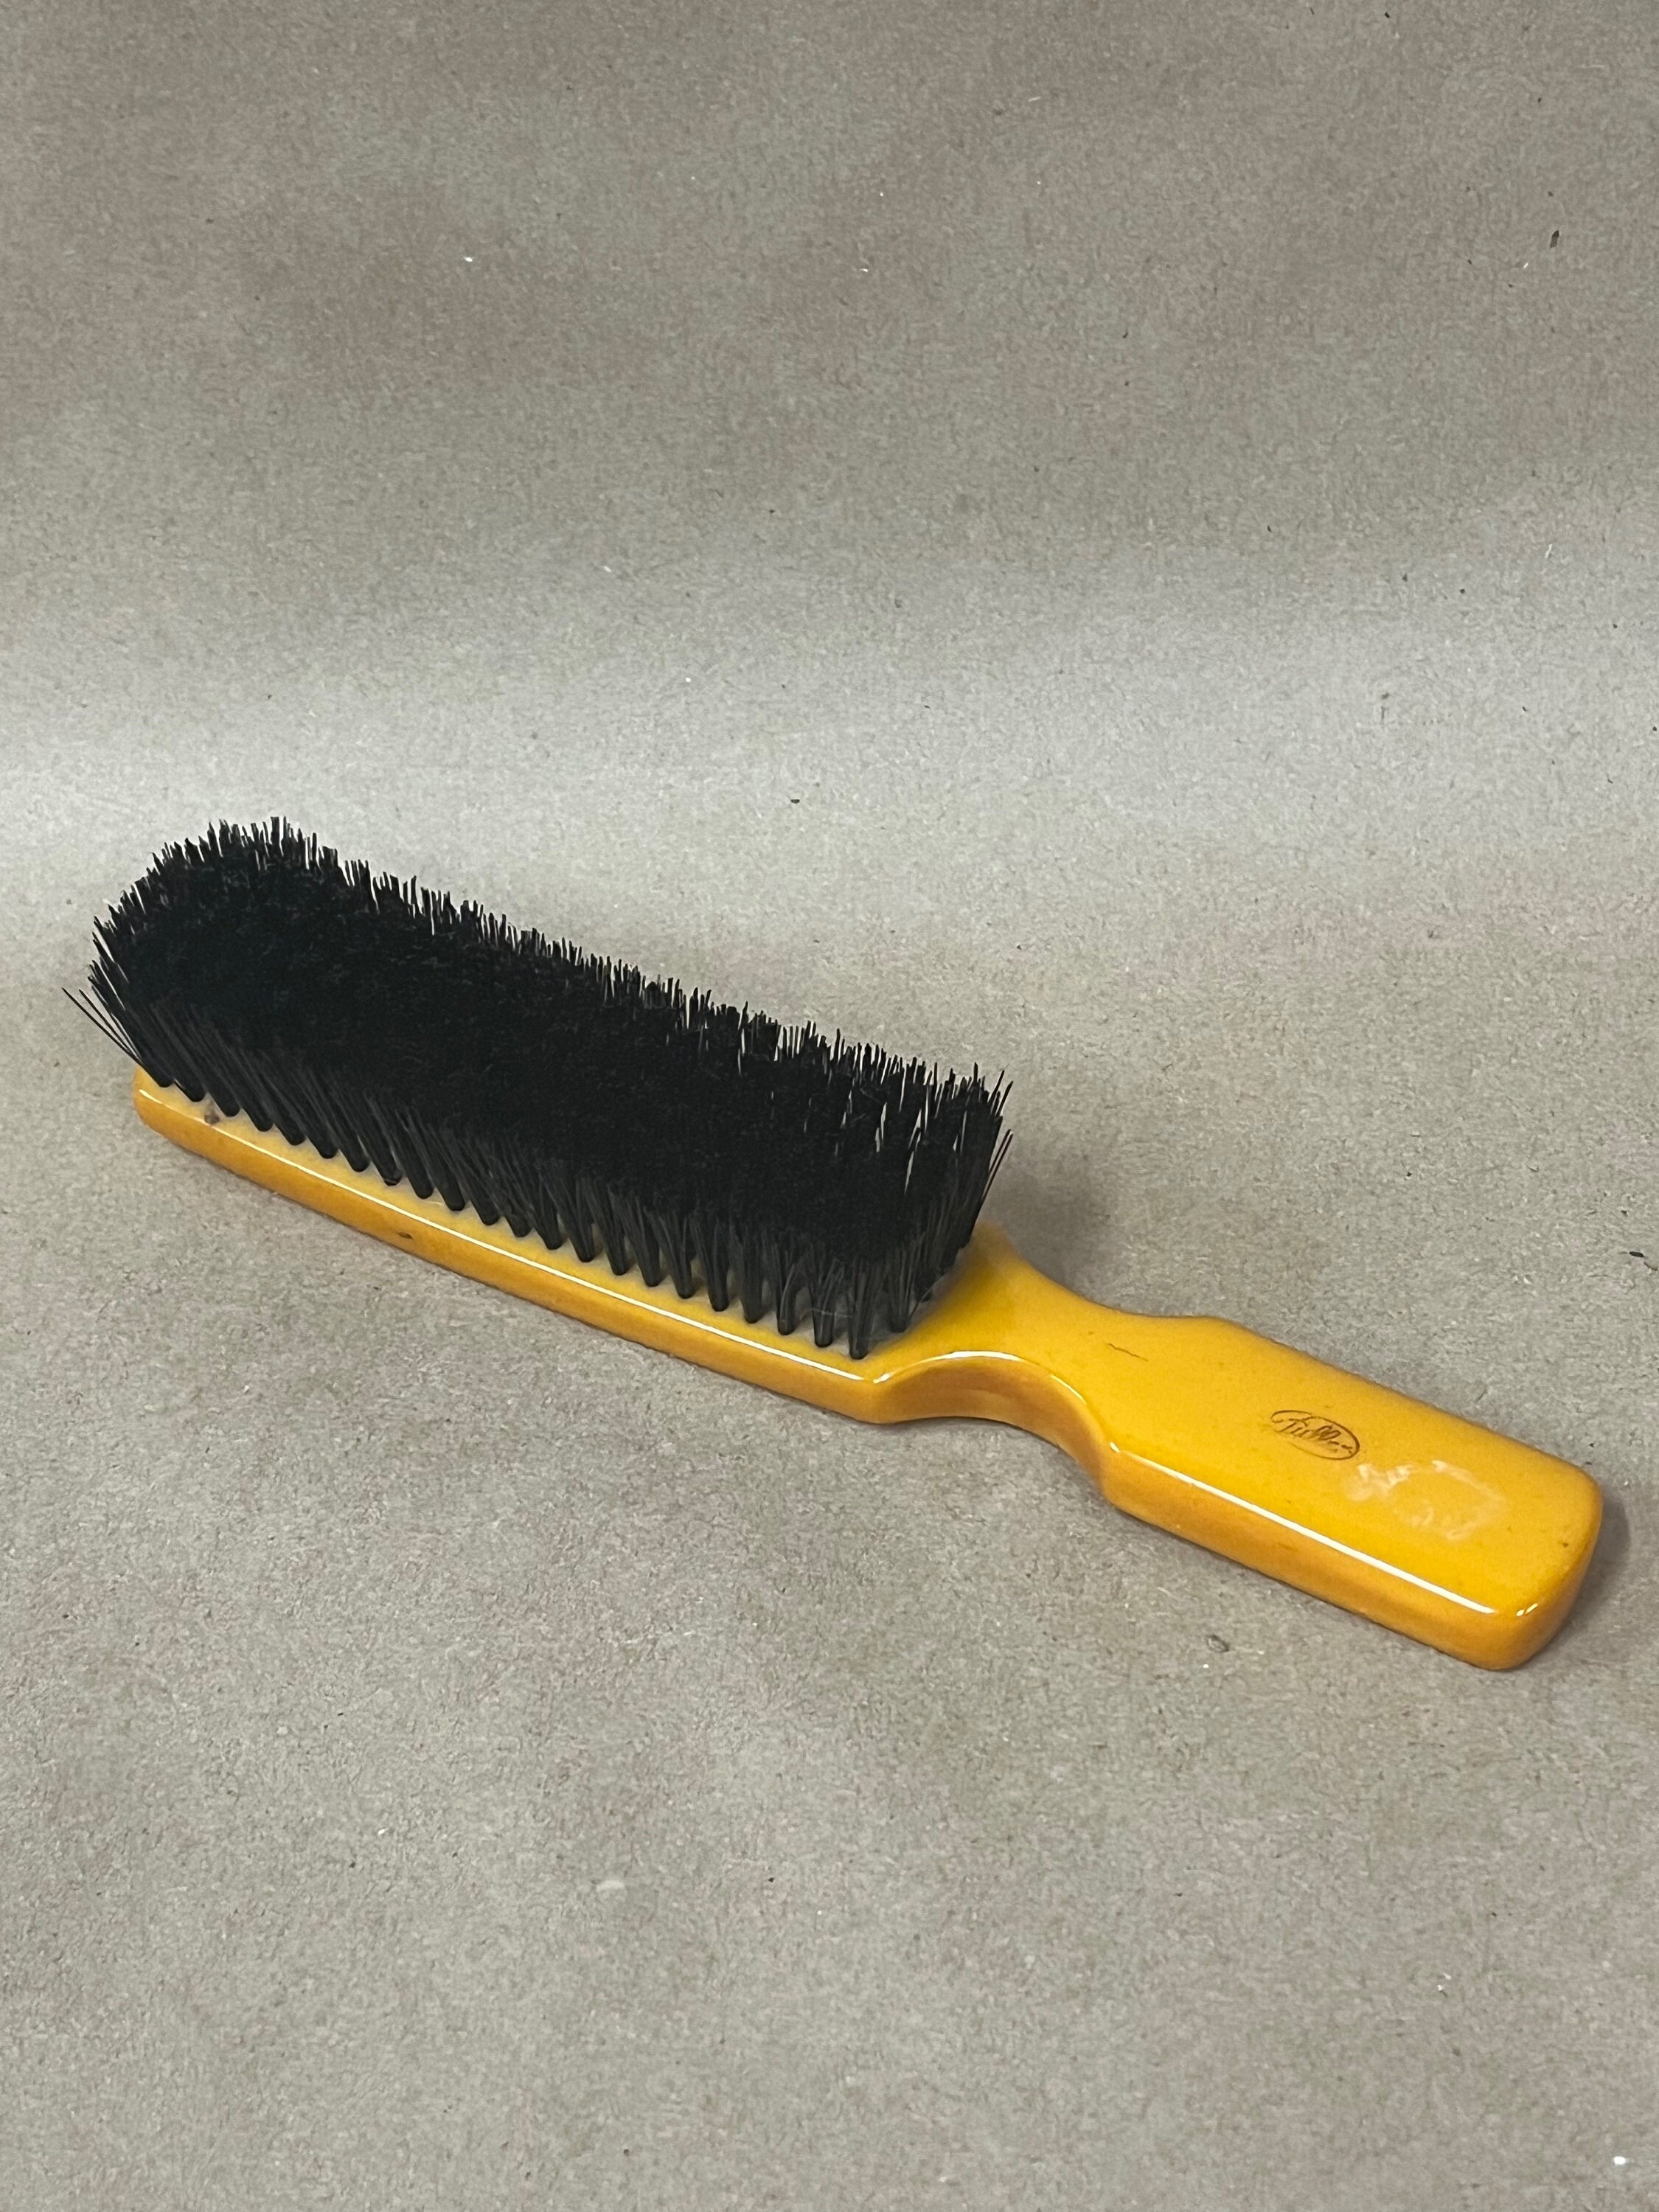 NEW Vintage FULLER Brush Hairbrush #531